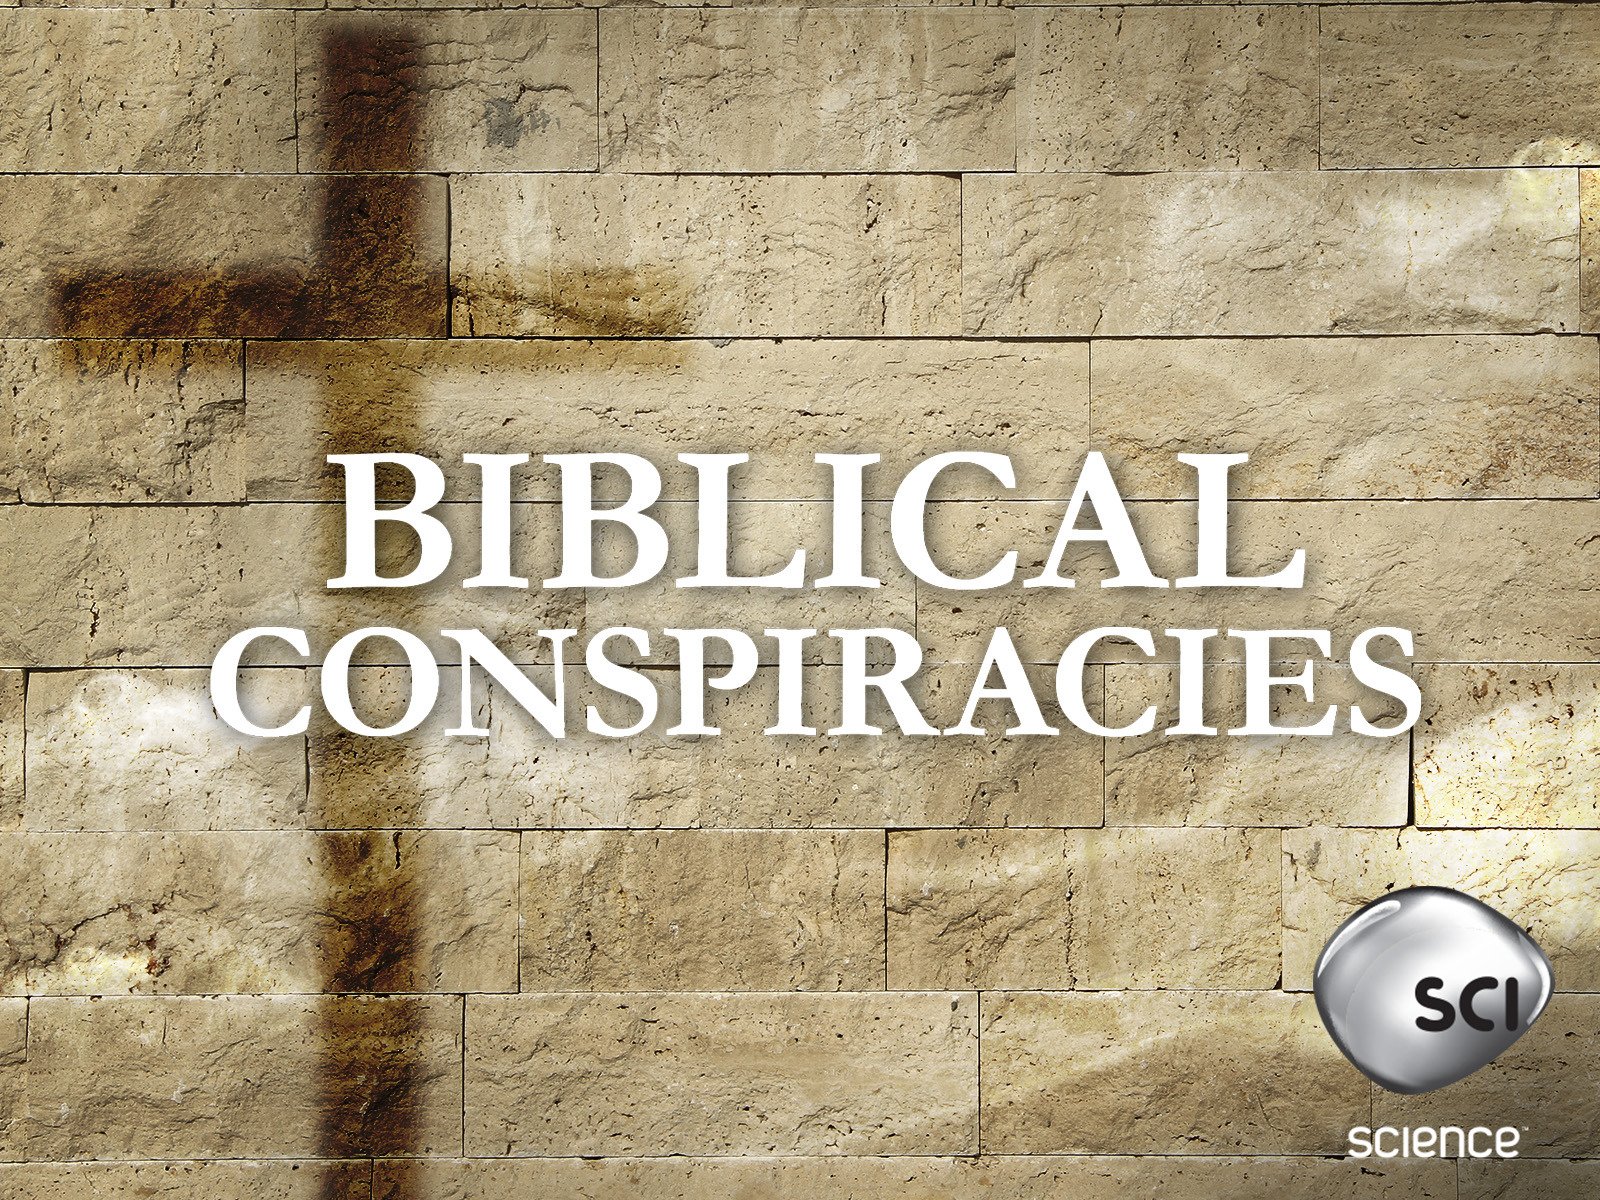 BIBLICAL CONSPIRACIES